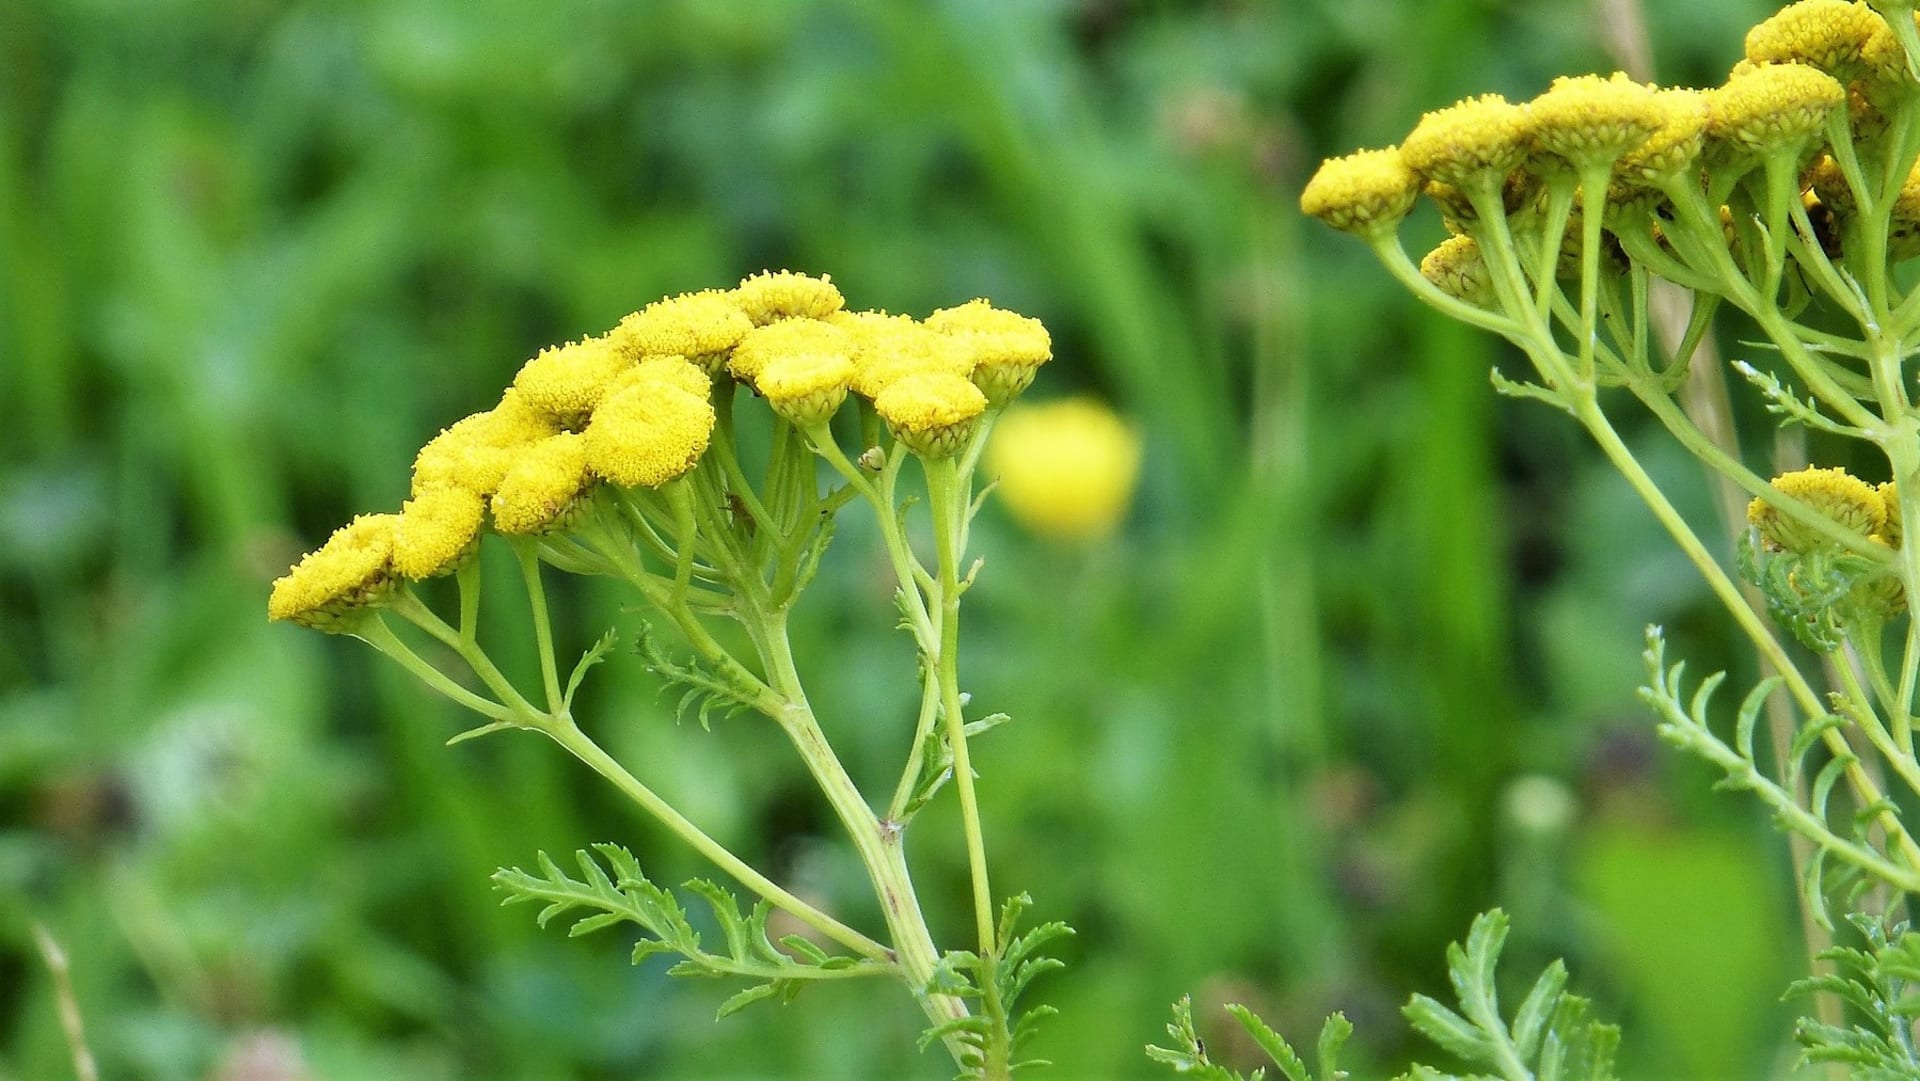 Celá rostlina i samotné květy vratiče obecného (Tanacetum vulgare) obsahují pyrethrum, látku, která se využívá jako účinný odpuzovač hmyzu.